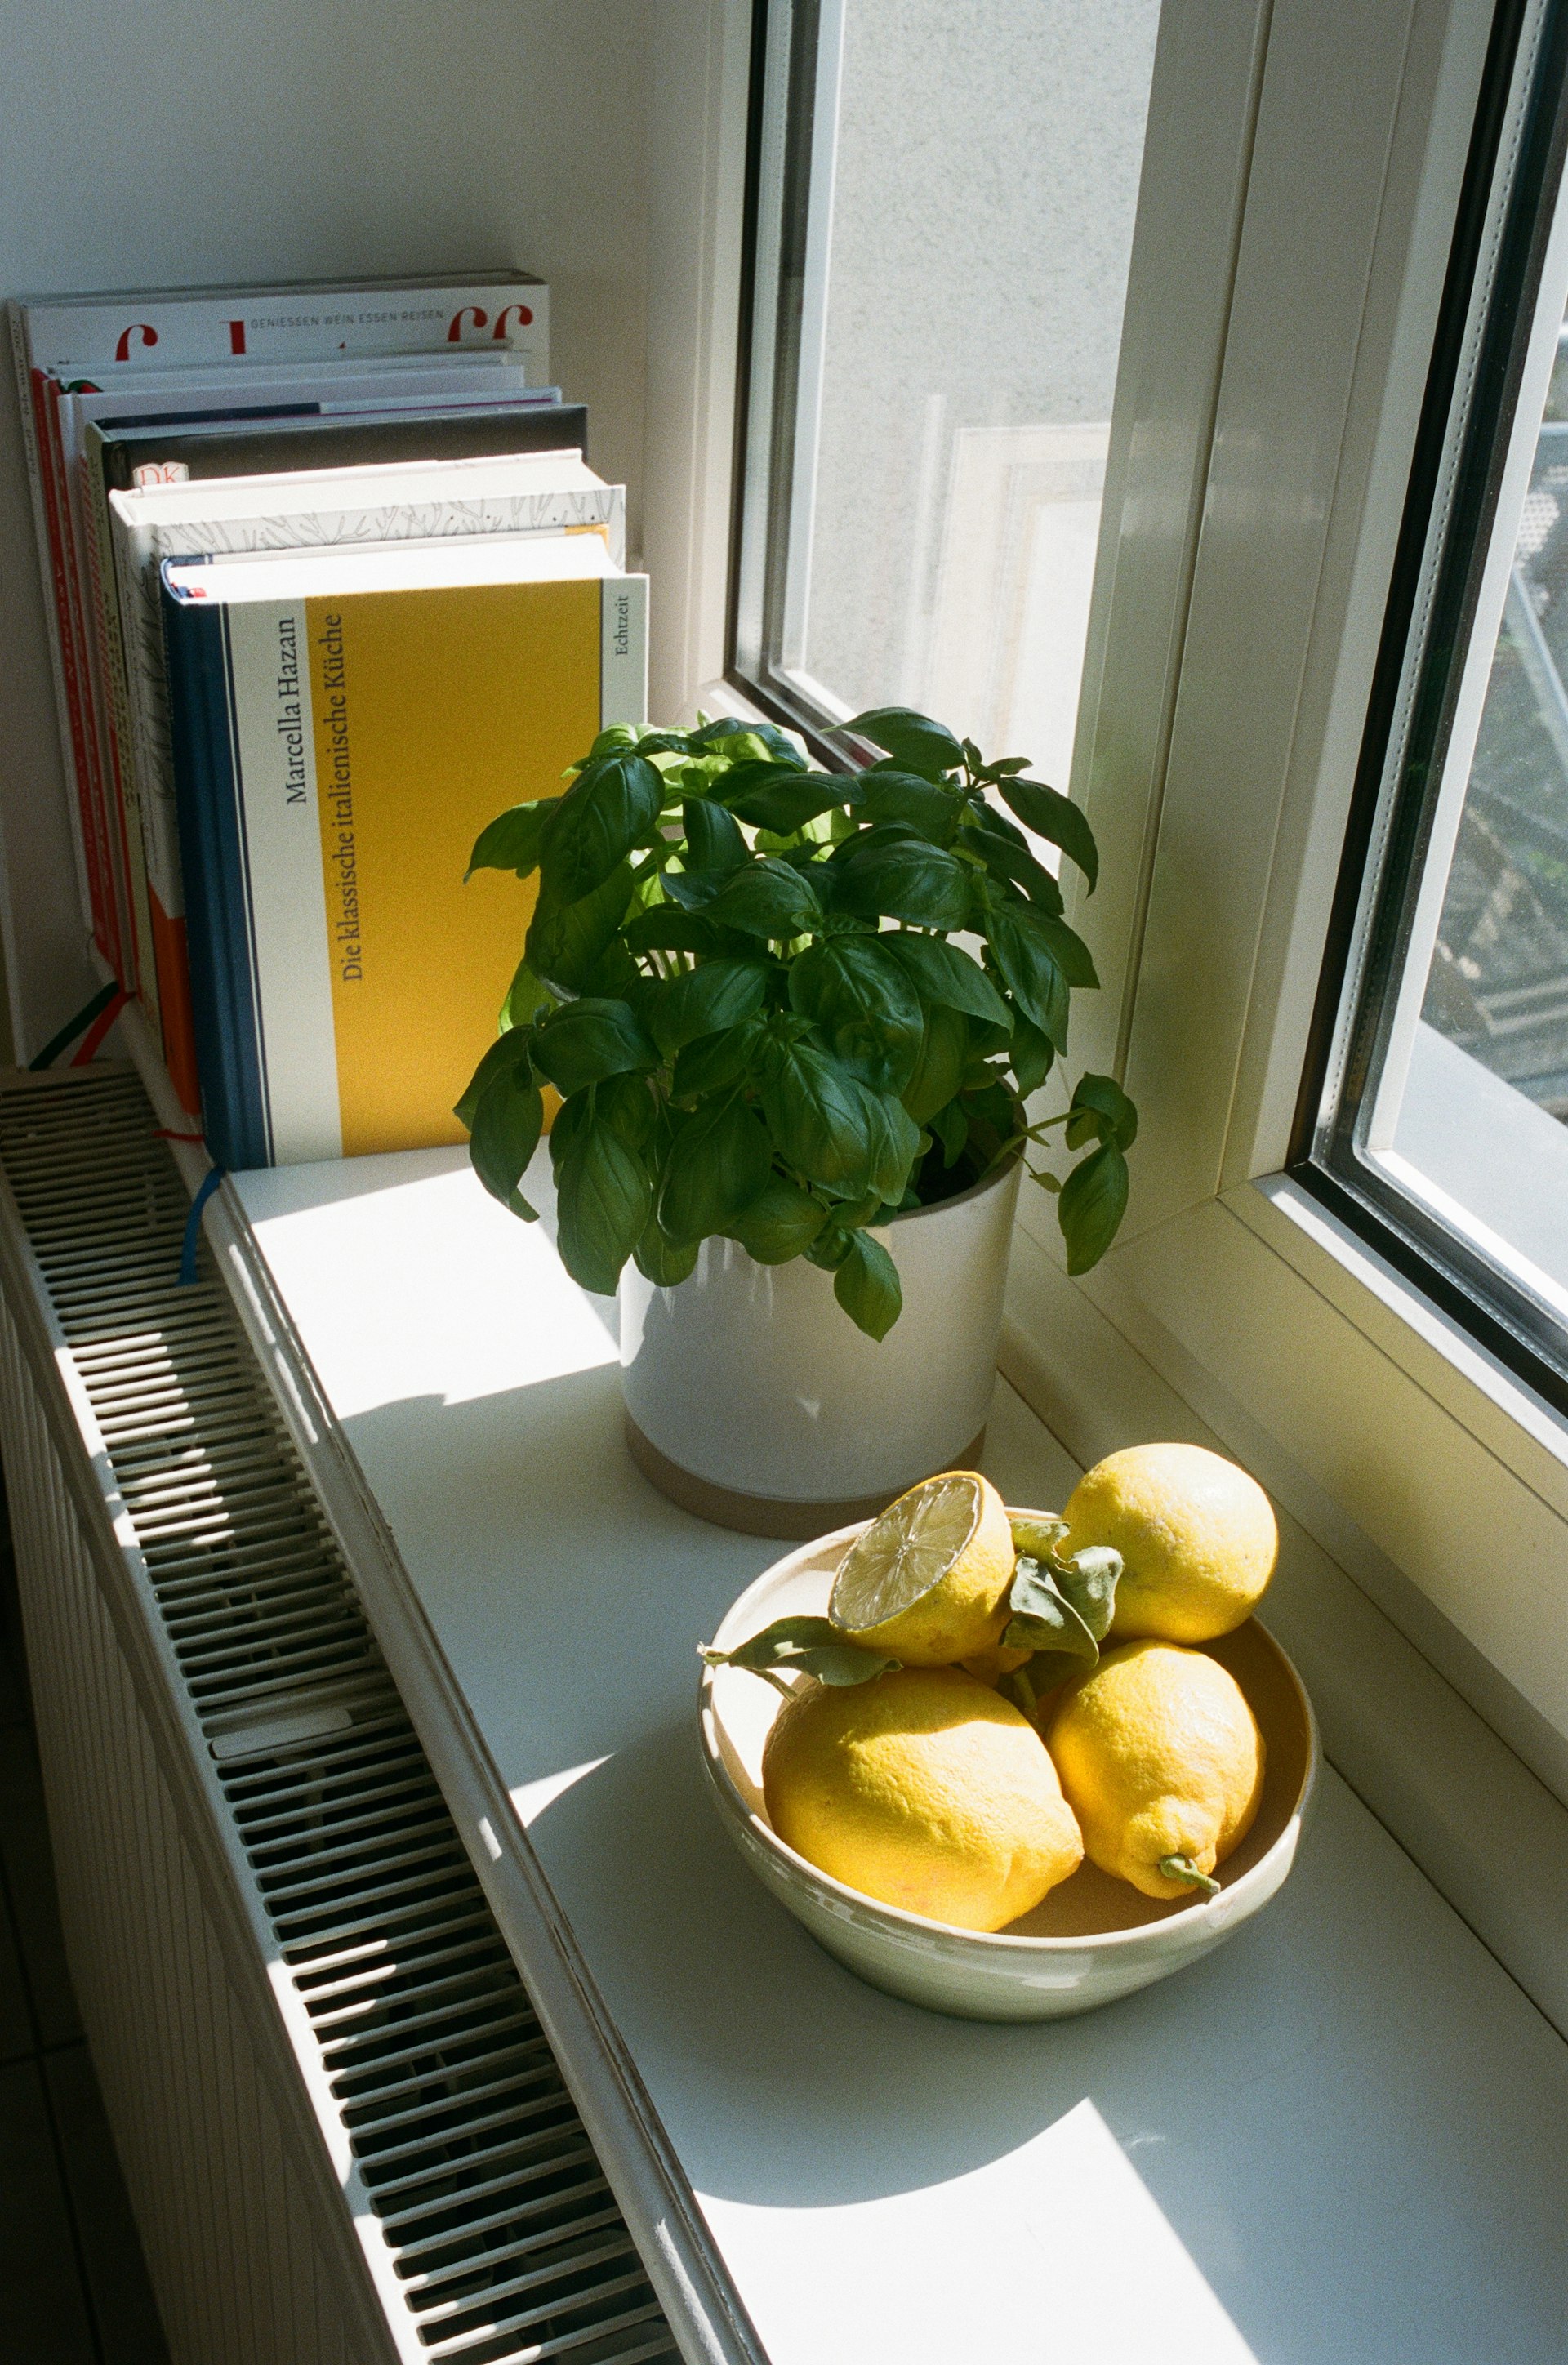 Zitrone und Basilikum auf Fensterbrett